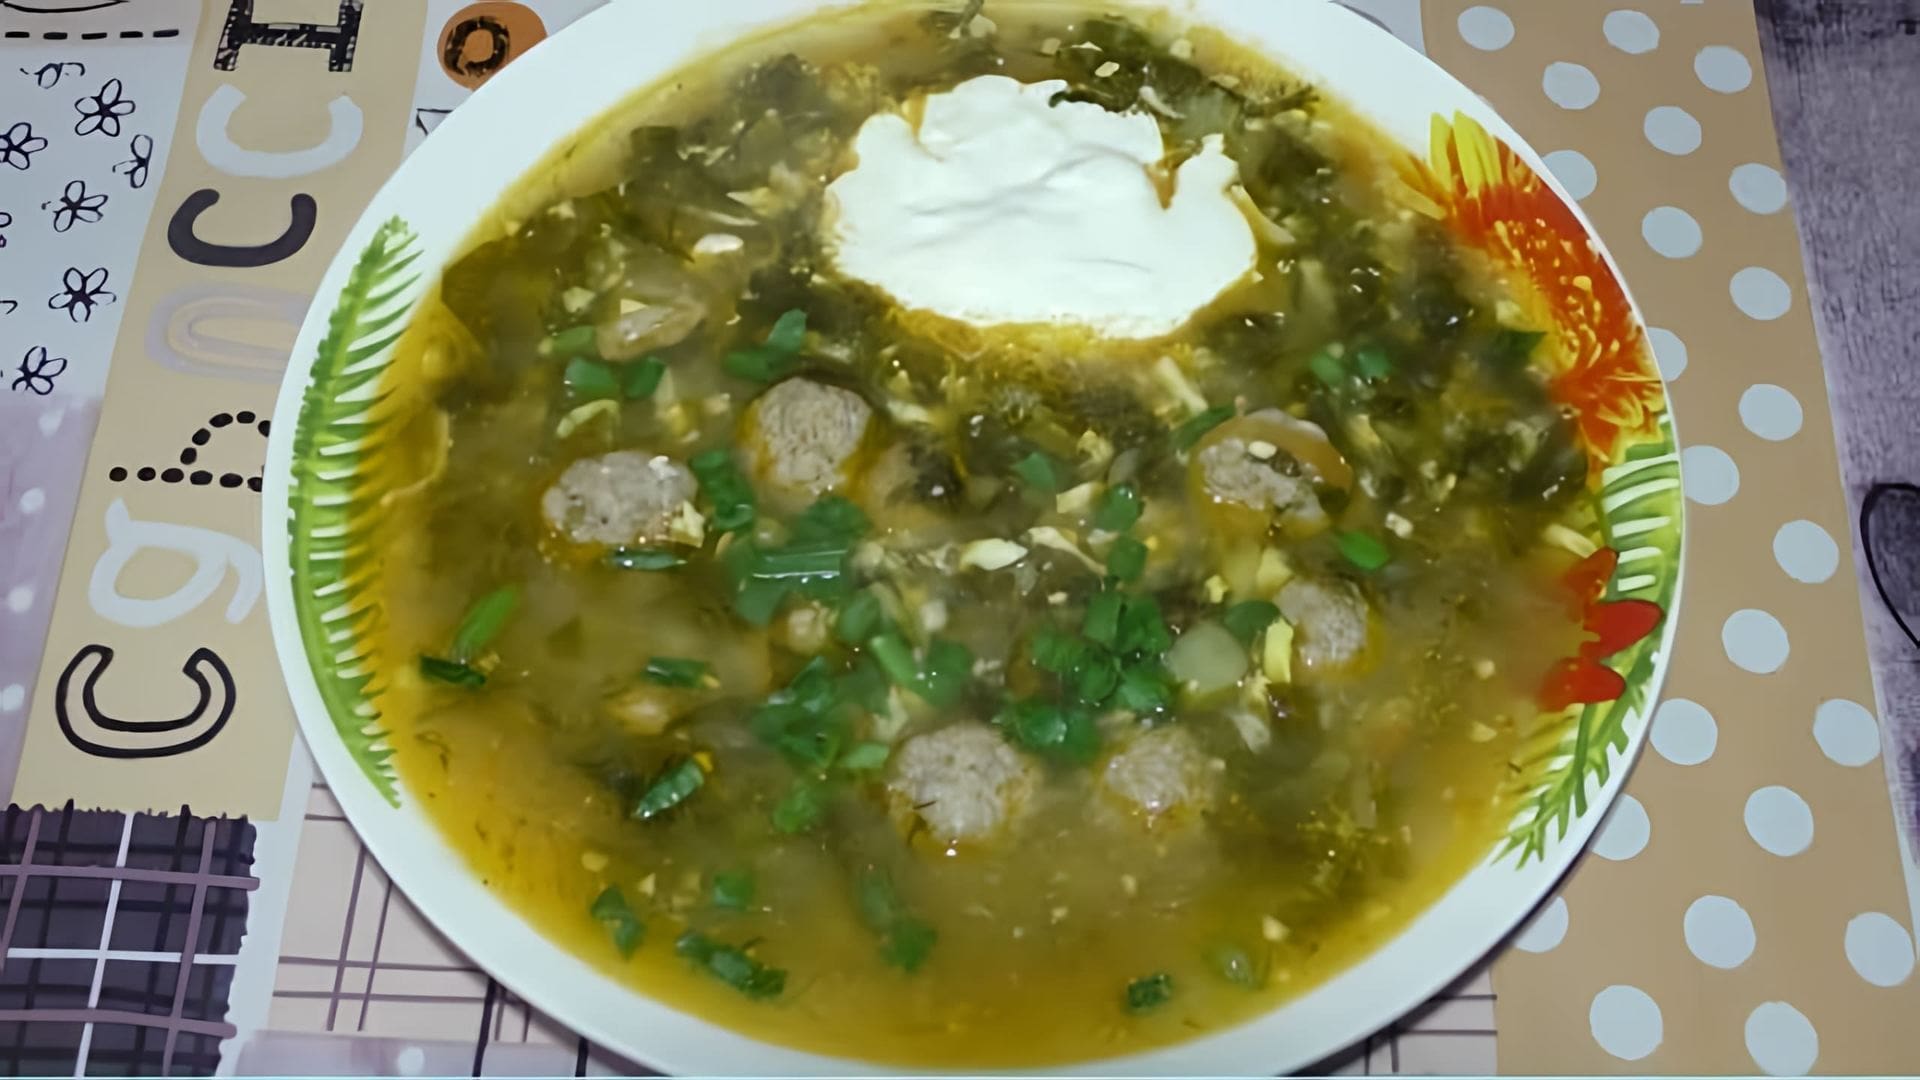 В этом видео демонстрируется рецепт приготовления супа из щавеля с фрикадельками